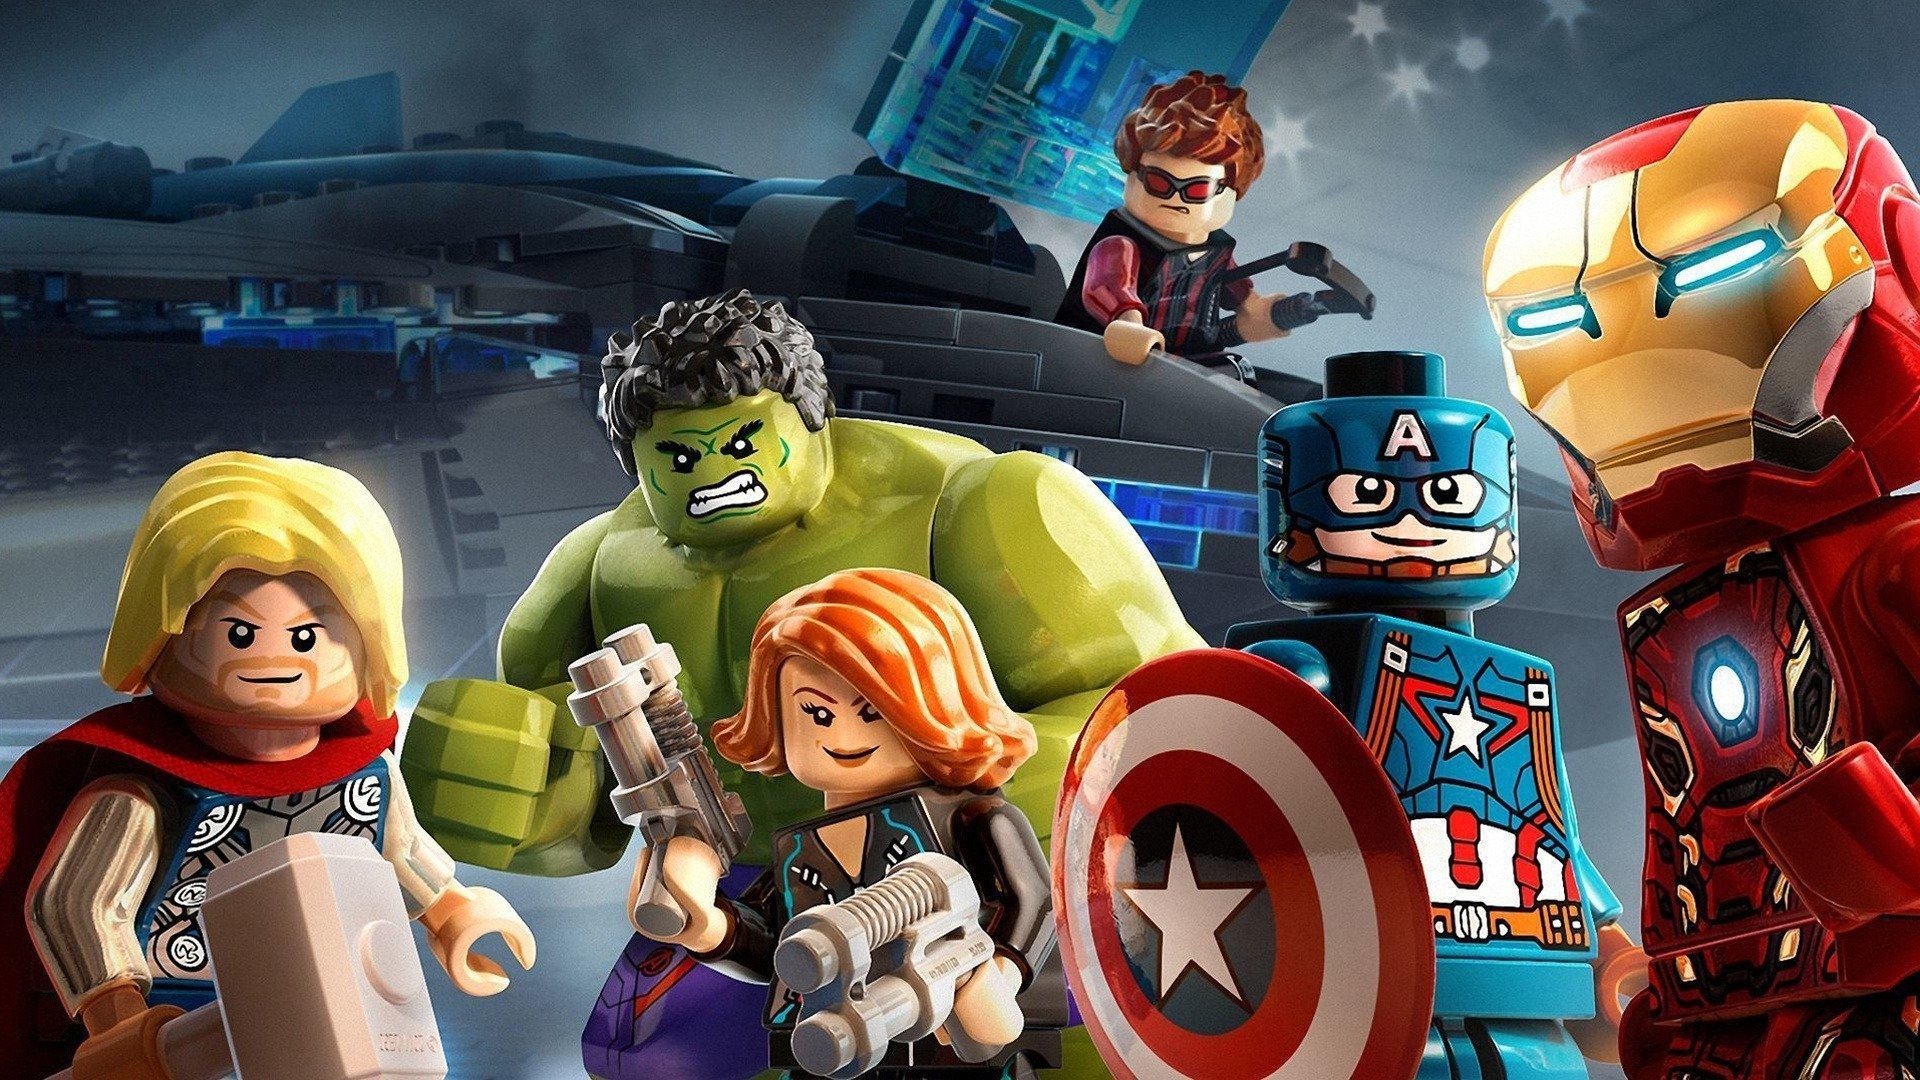 LEGO Marvel Superheroes: Avengers Reassembled (Web Animation) - TV